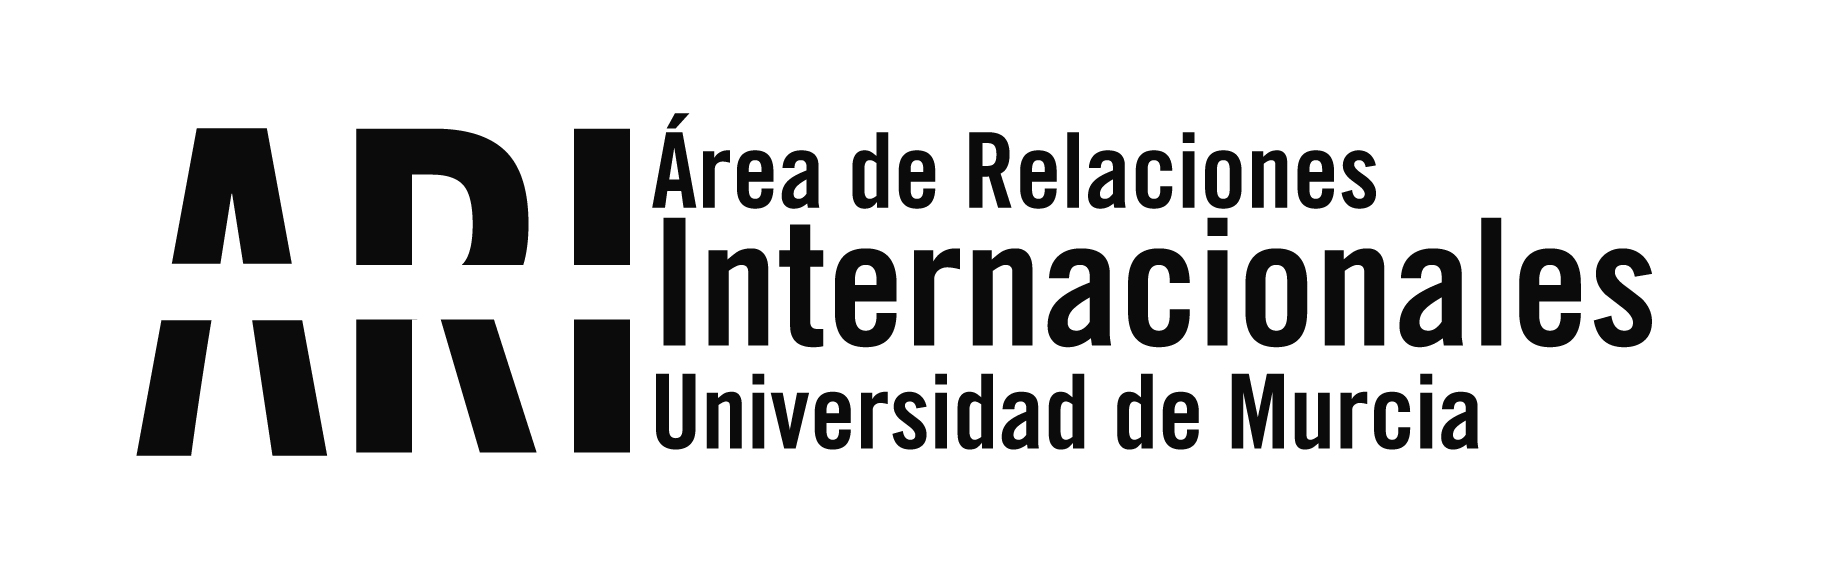 La AUIP lanza su convocatoria de Misiones Técnicas para el Postgrado en Iberoamérica curso 2020-21 - Área de Relaciones Internacionales